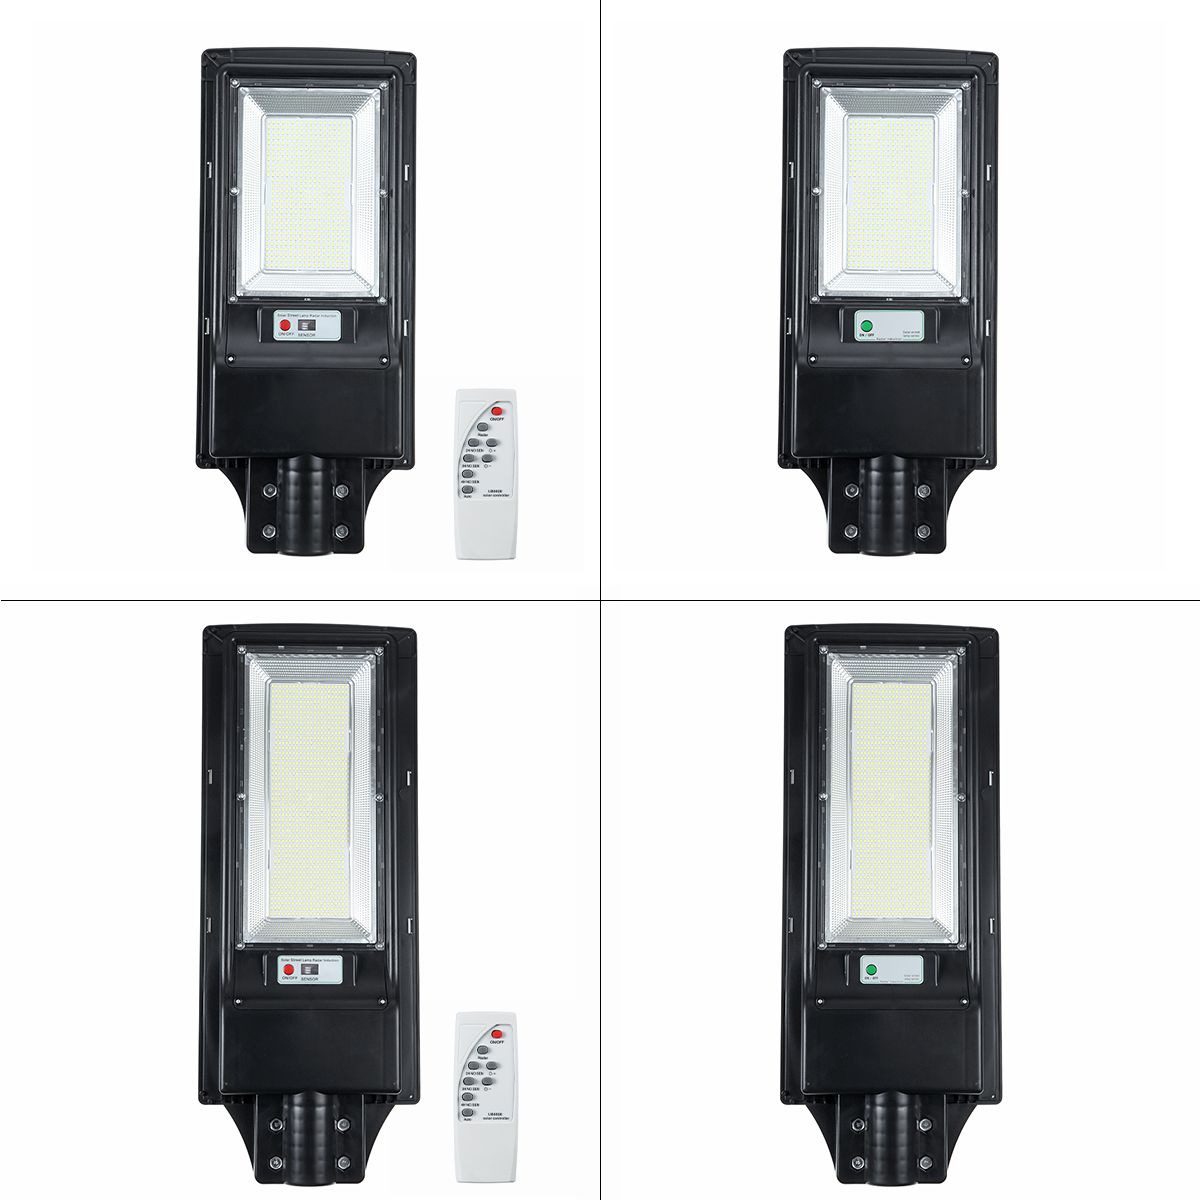 966492-LED-Solar-Street-Light-Motion-Sensor-Outdoor-Wall-LampRemote-1629138